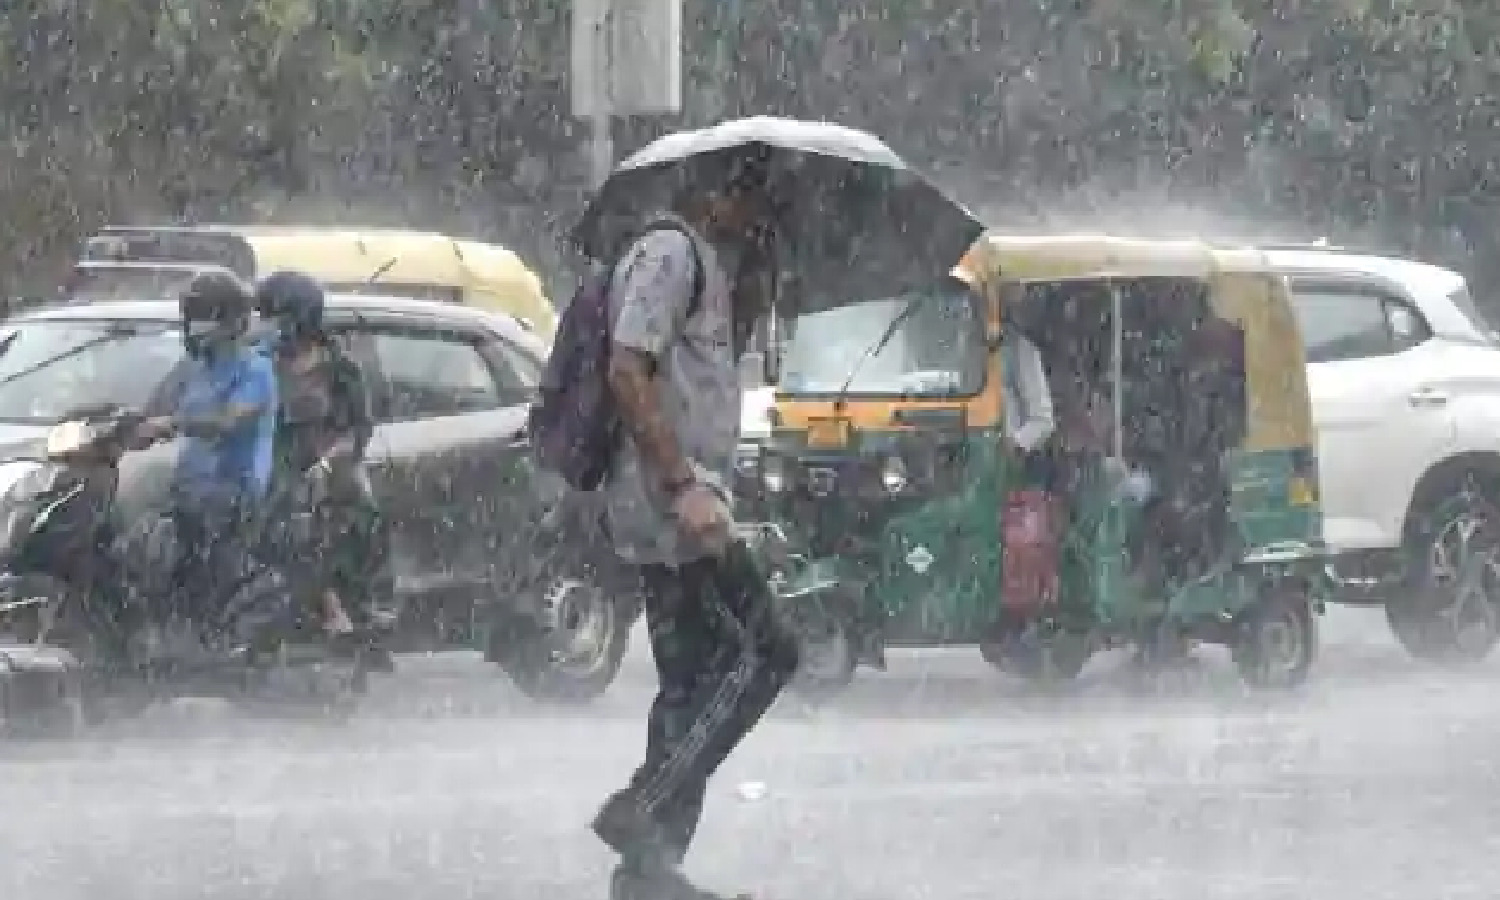 दिल्ली-एनसीआर पर मानसून की दस्तक के बाद से लगातार बारिश हो रही, येलो अलर्ट हुआ जारी